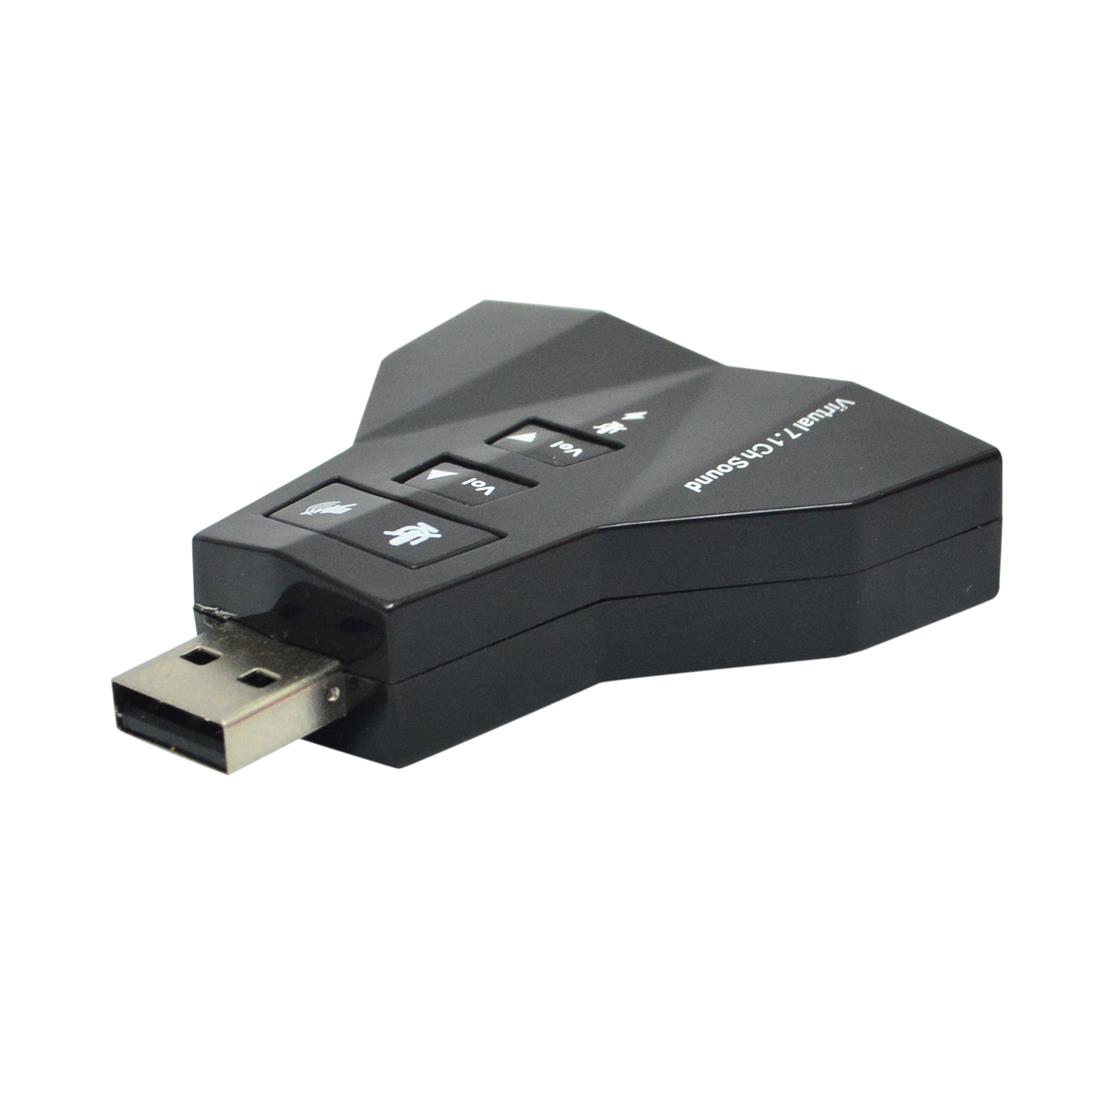 Tarjeta sonido doble entrada 7.1 canales USB Plug & Play + Control de  volumen - Tecnopura